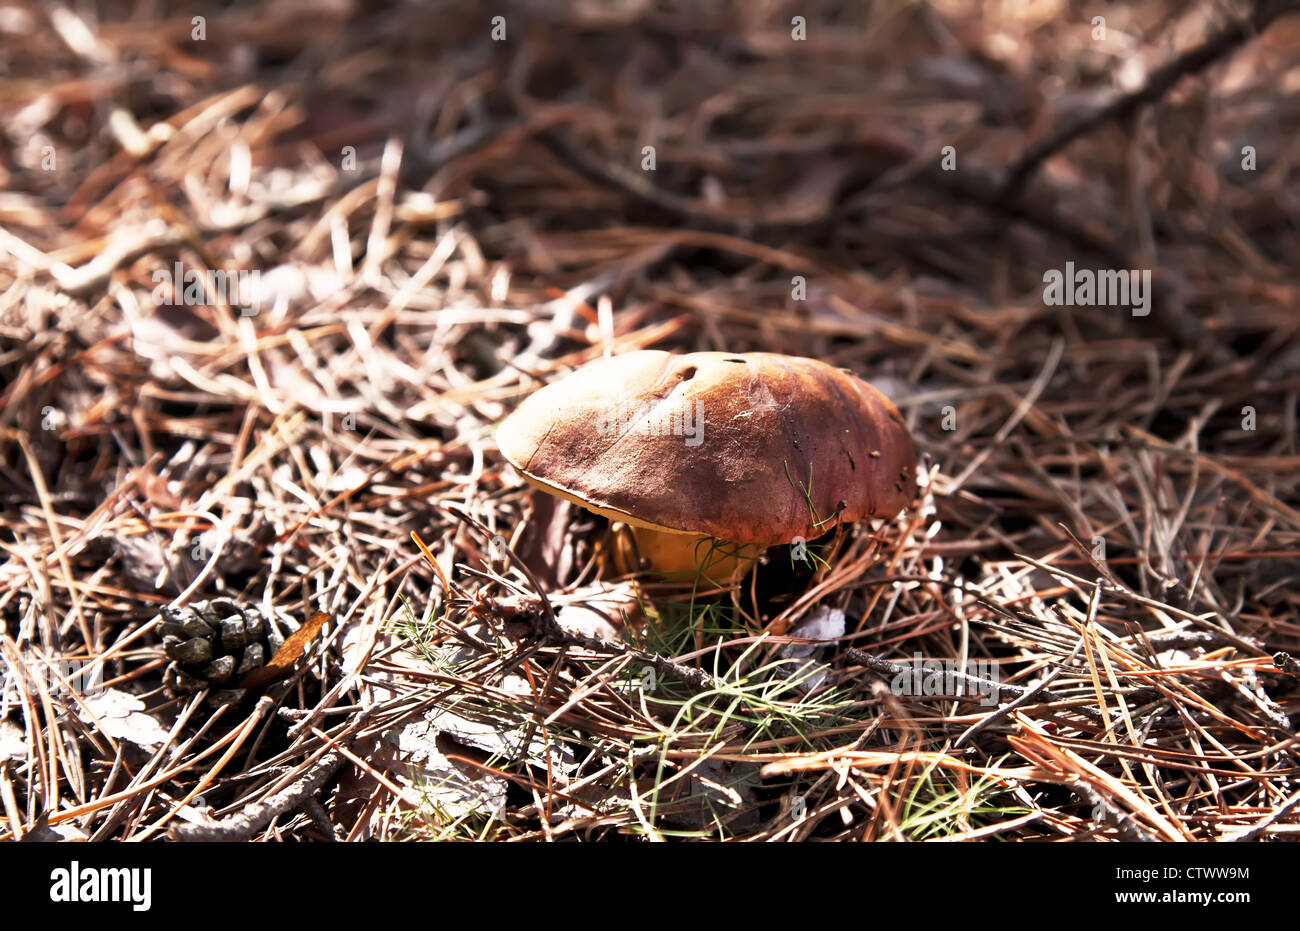 Little xerocomus mushroom in autumn forest Stock Photo